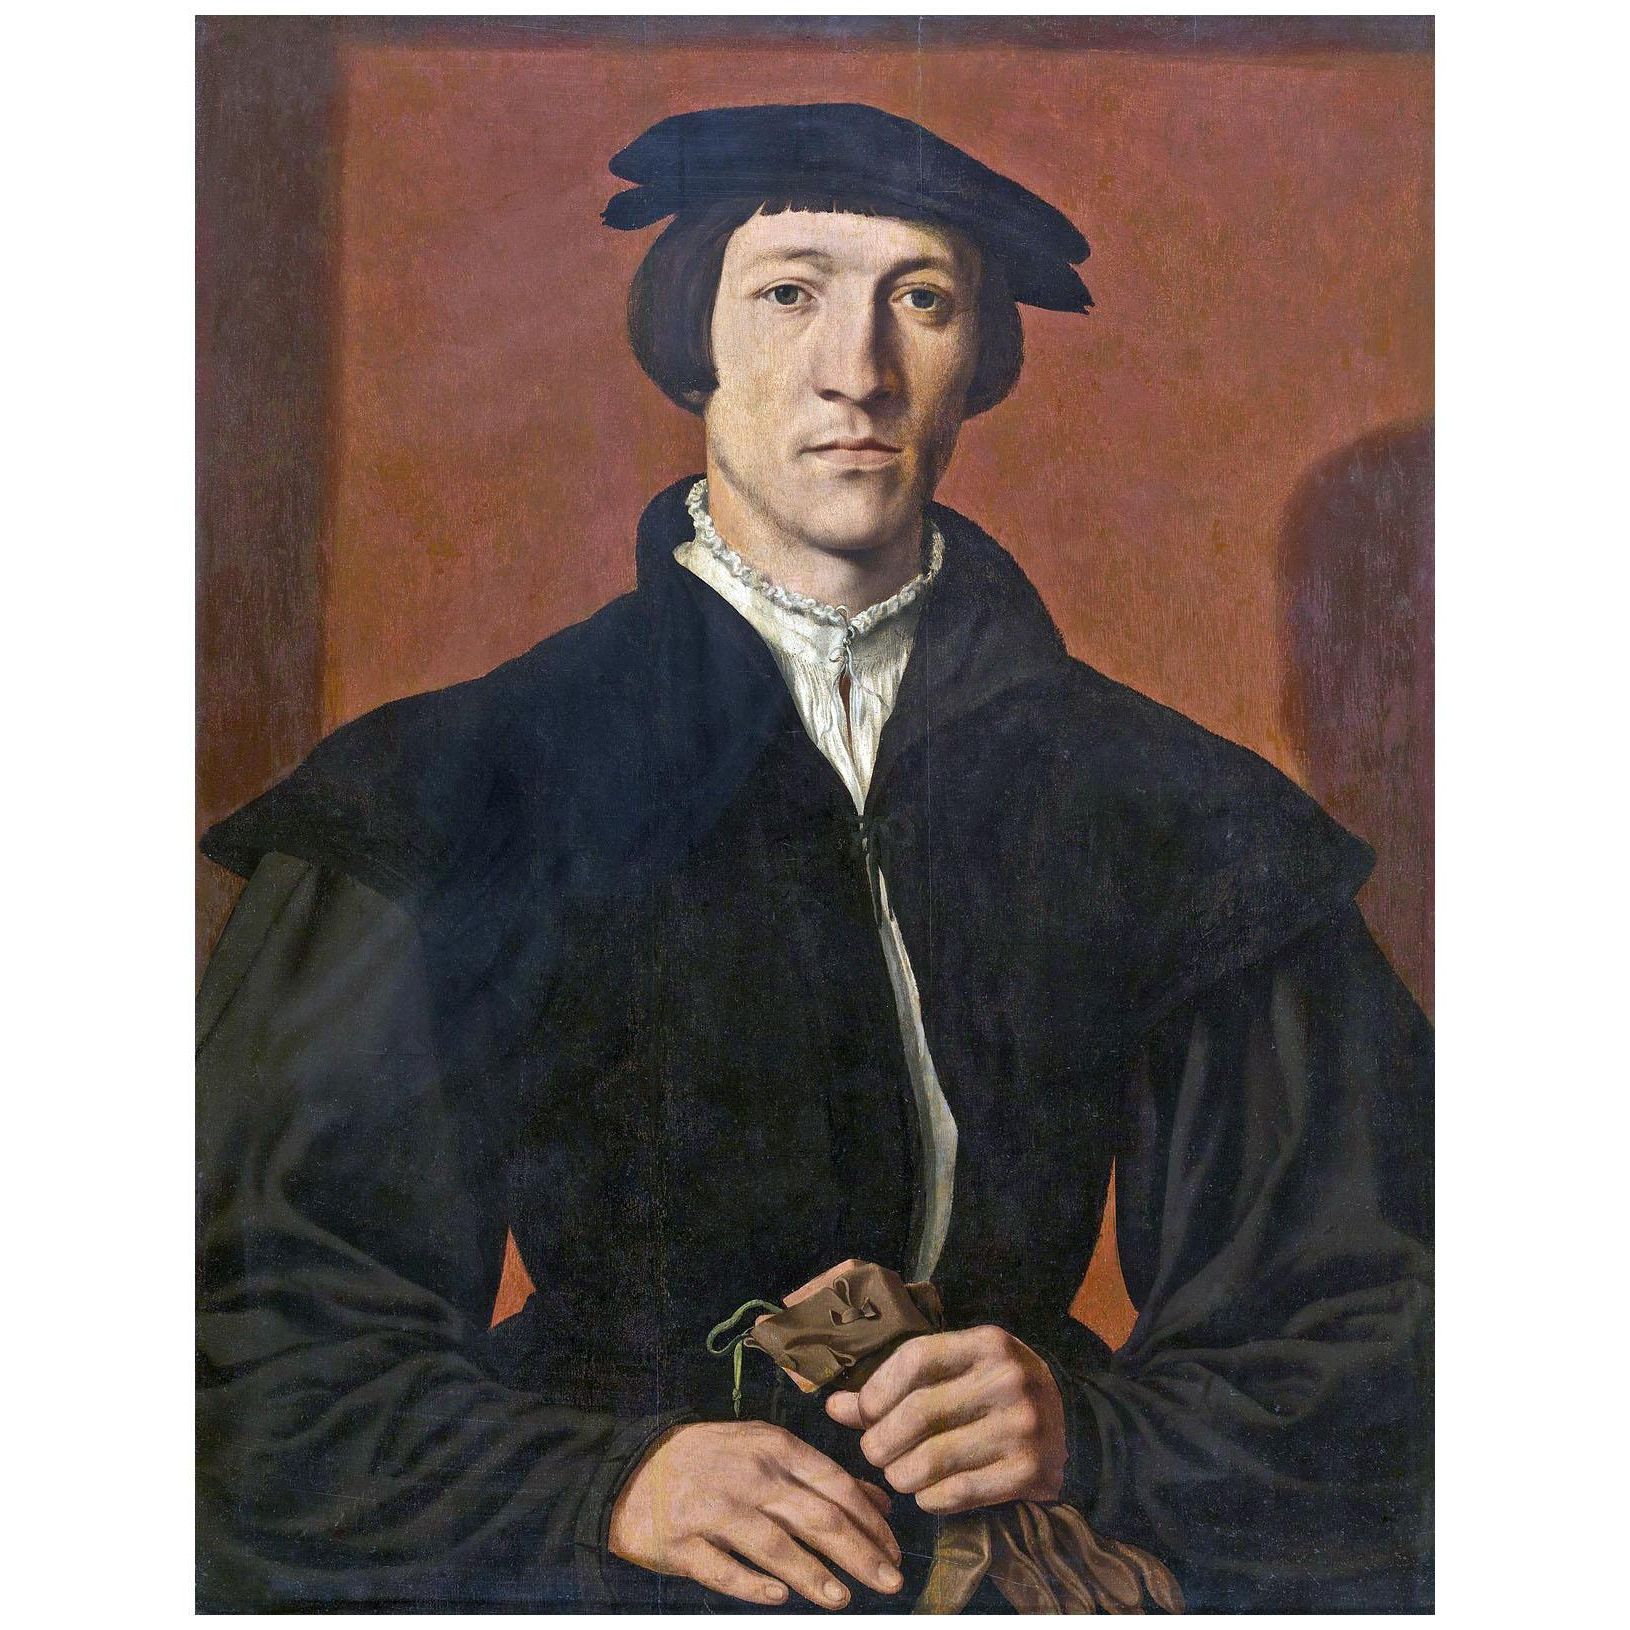 Maarten van Heemskerck. Portrait of the Man. 1564. KMSKA Antwerpen